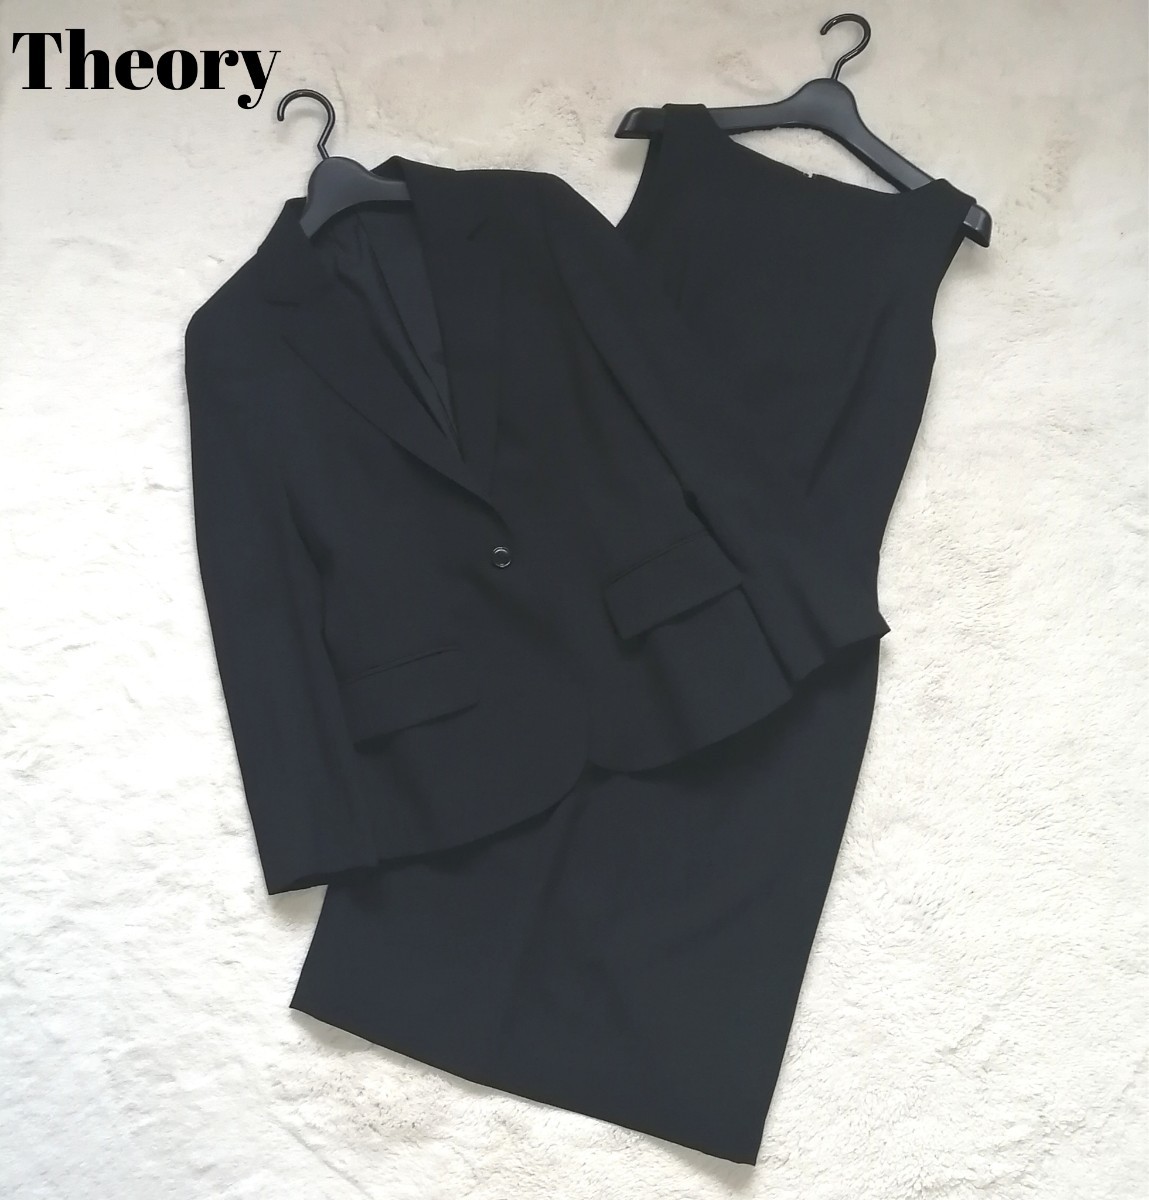 セオリー ワンピース セットアップスーツ フォーマル ブラック 黒 大きいサイズ Theory レディーススーツ